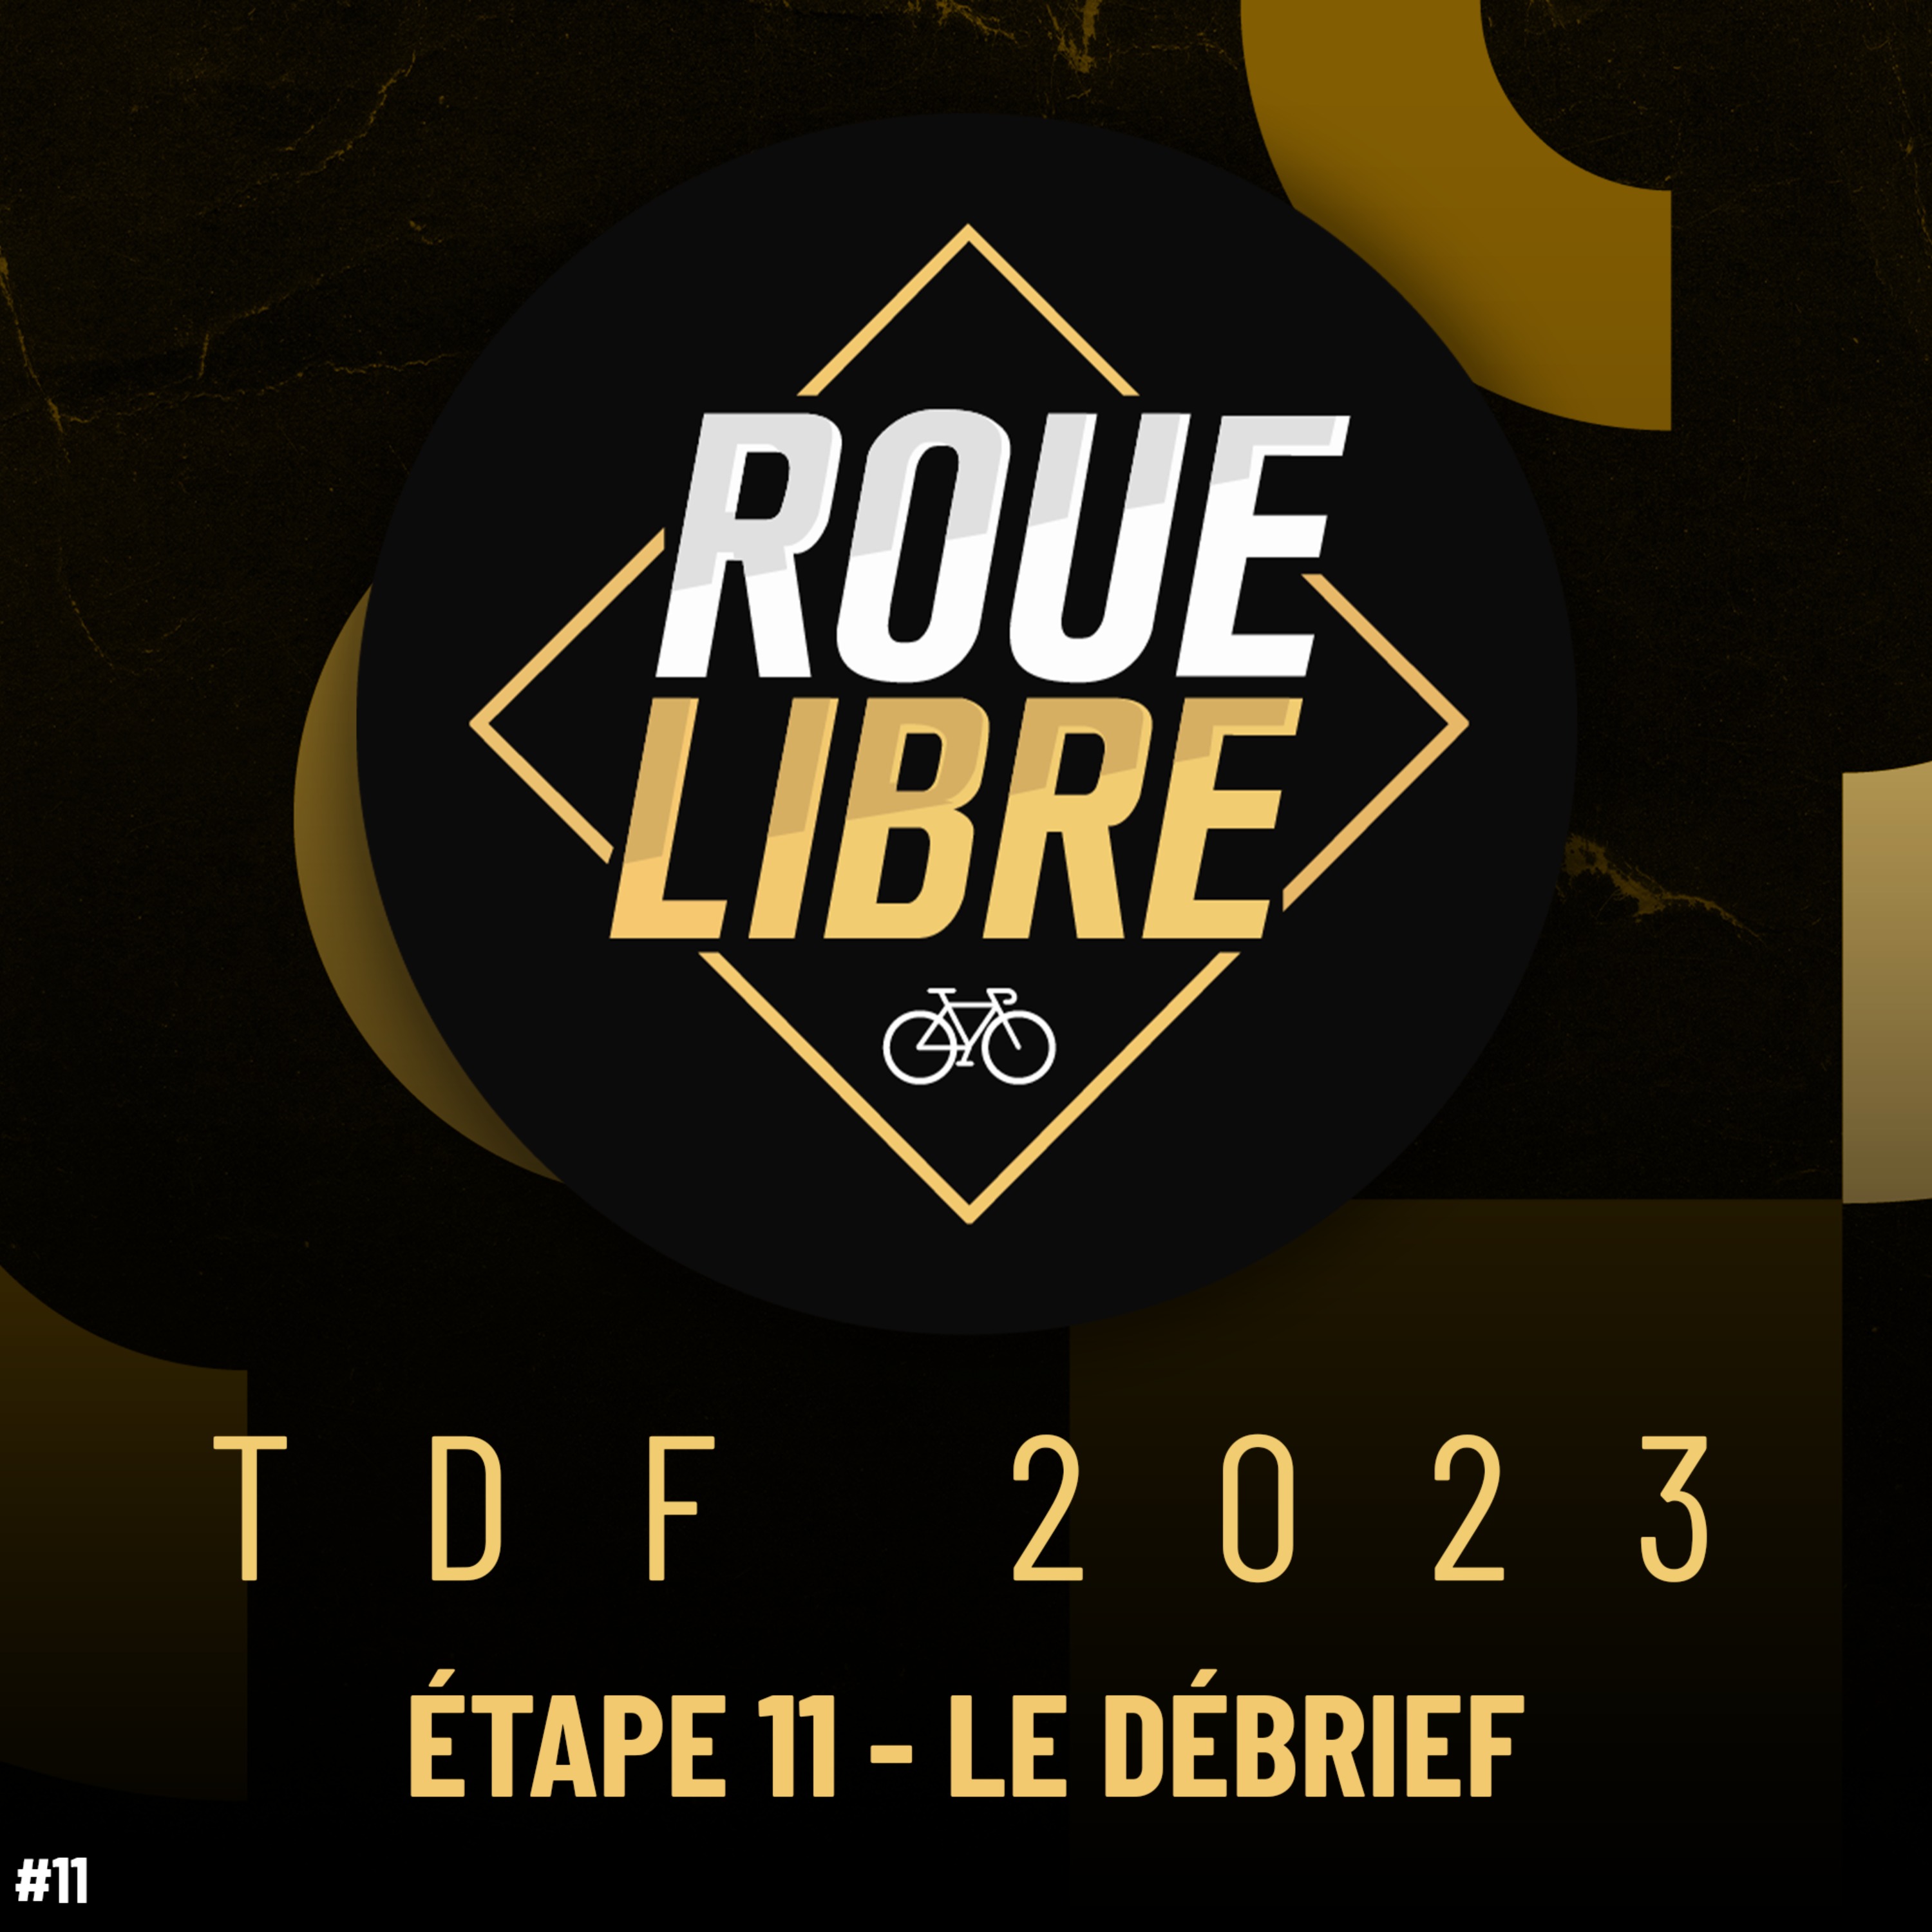 PHILIPSEN DÉTRUIT LA CONCURRENCE ! Tour de France débrief #11 Roue Libre